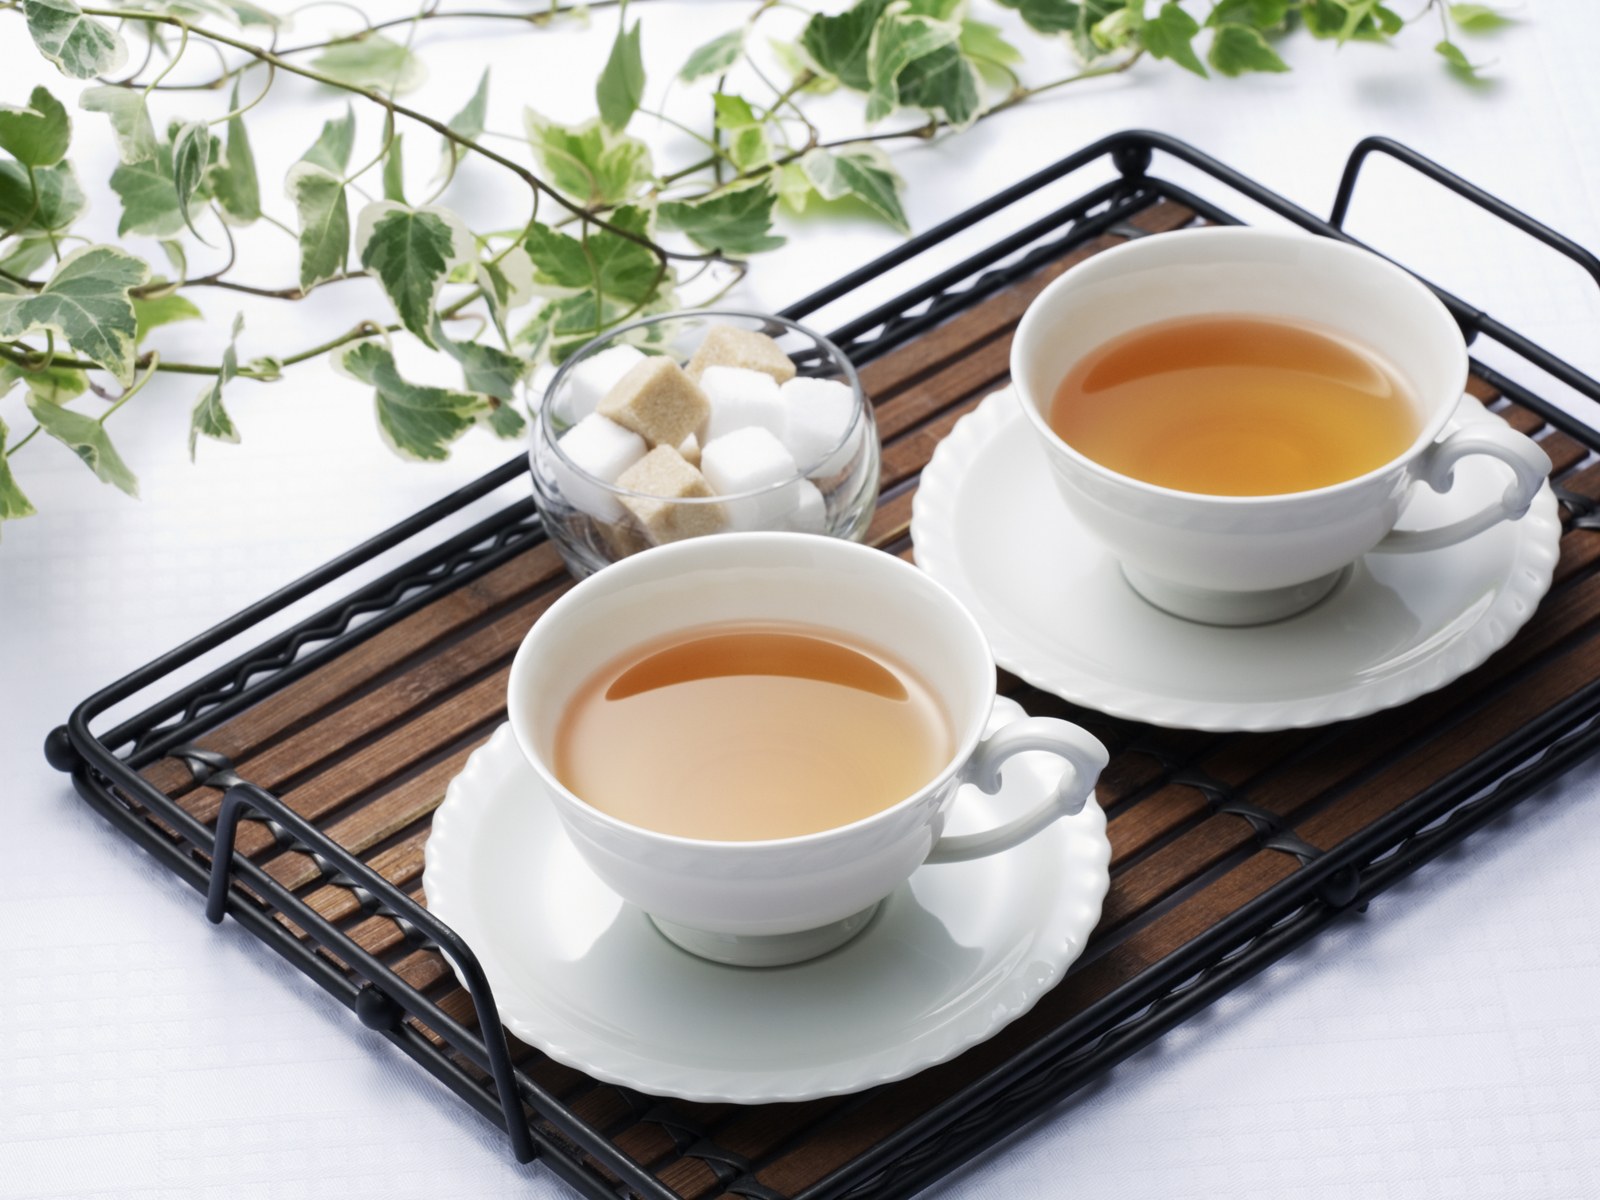 壁纸1600x1200 日本新茶图片 日本茶道摄影壁纸 日本茶道文化与健康饮品壁纸 日本茶道文化与健康饮品图片 日本茶道文化与健康饮品素材 摄影壁纸 摄影图库 摄影图片素材桌面壁纸